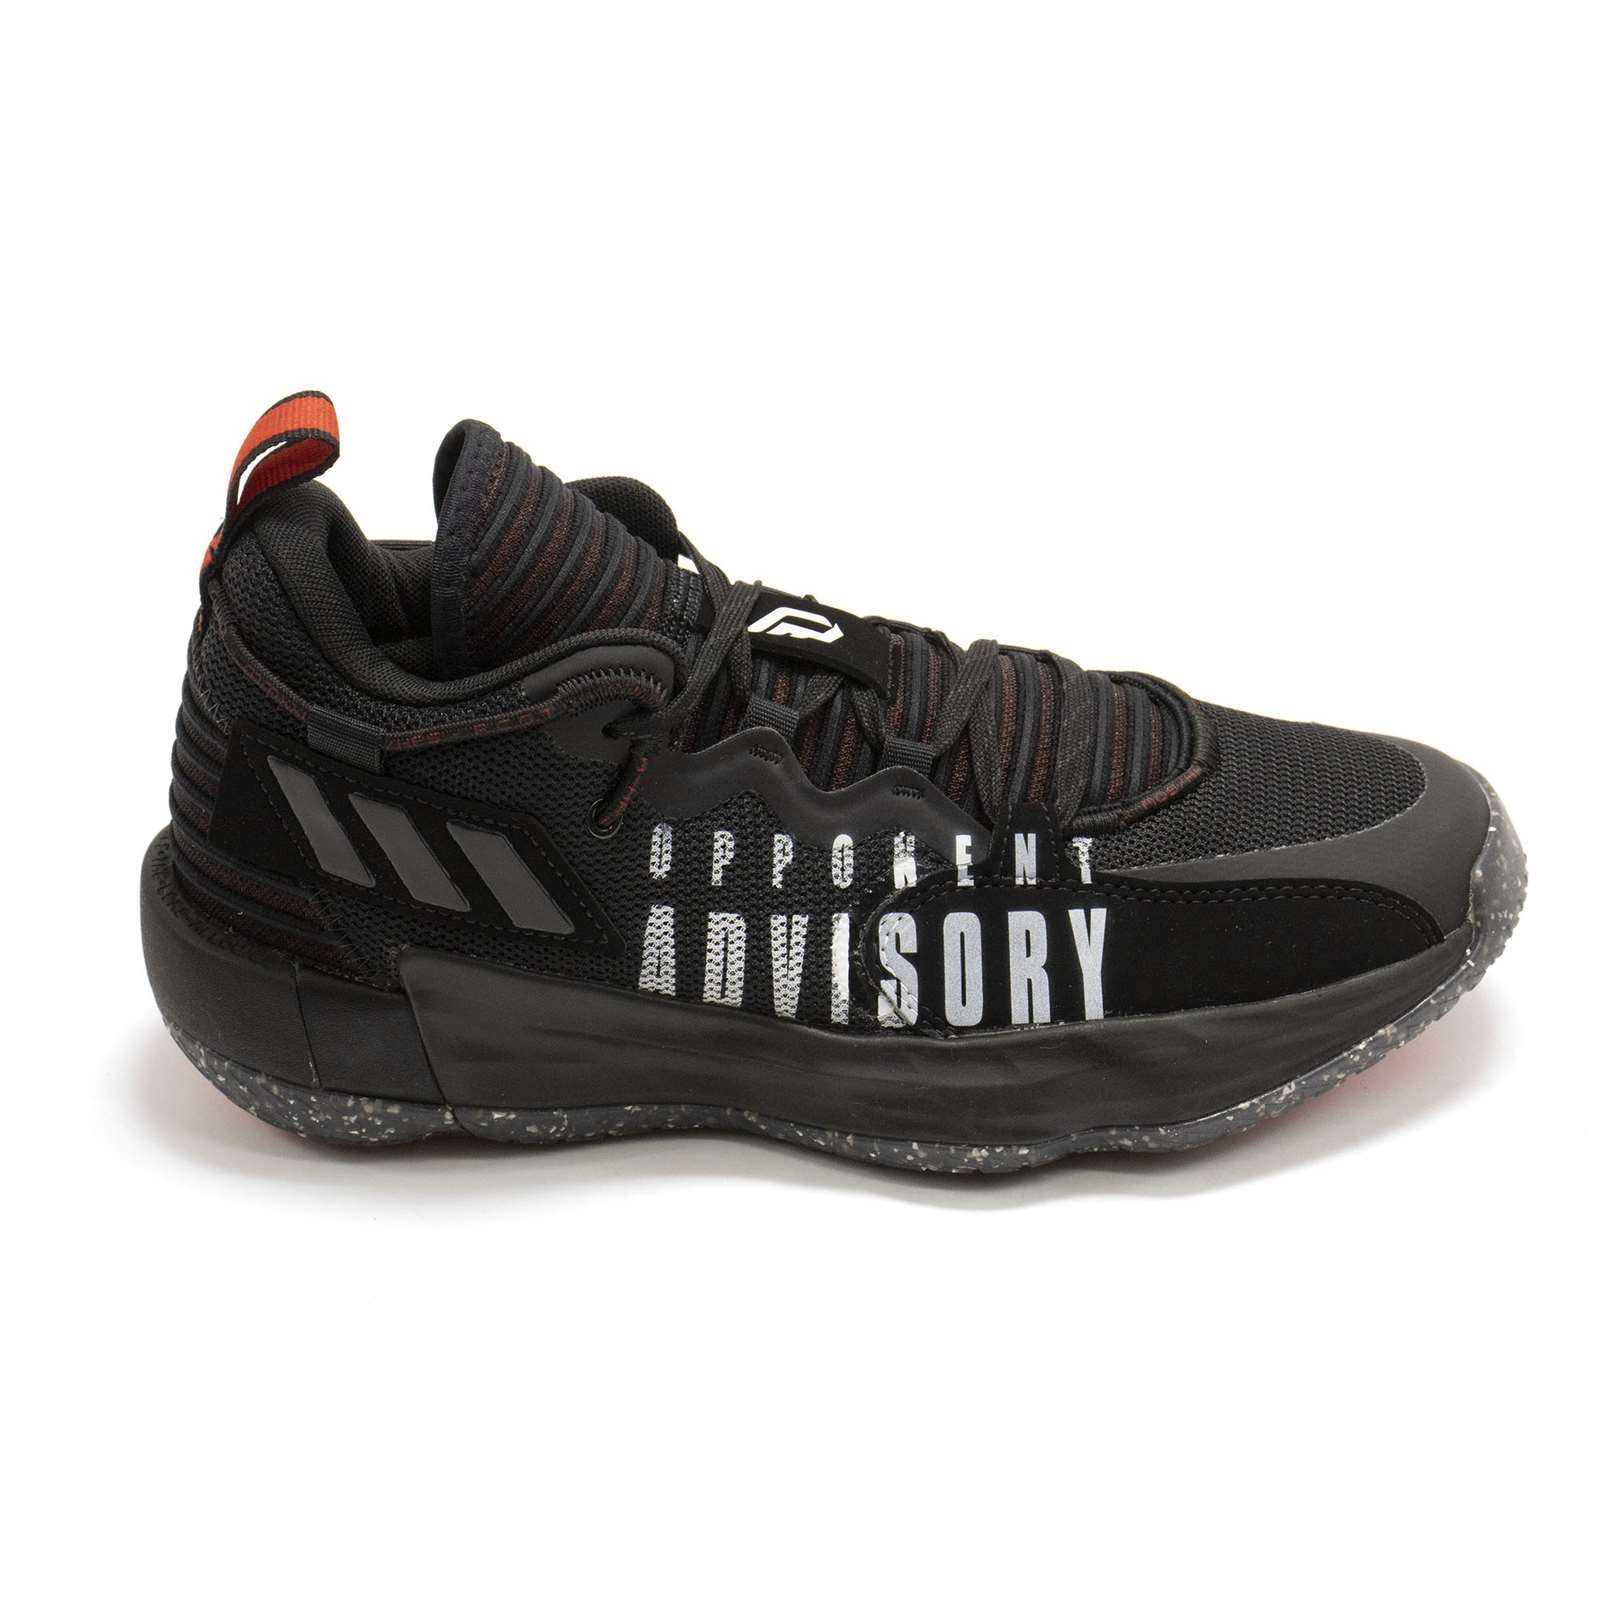 Adidas Men Dame 7 Extply Basketball Shoes